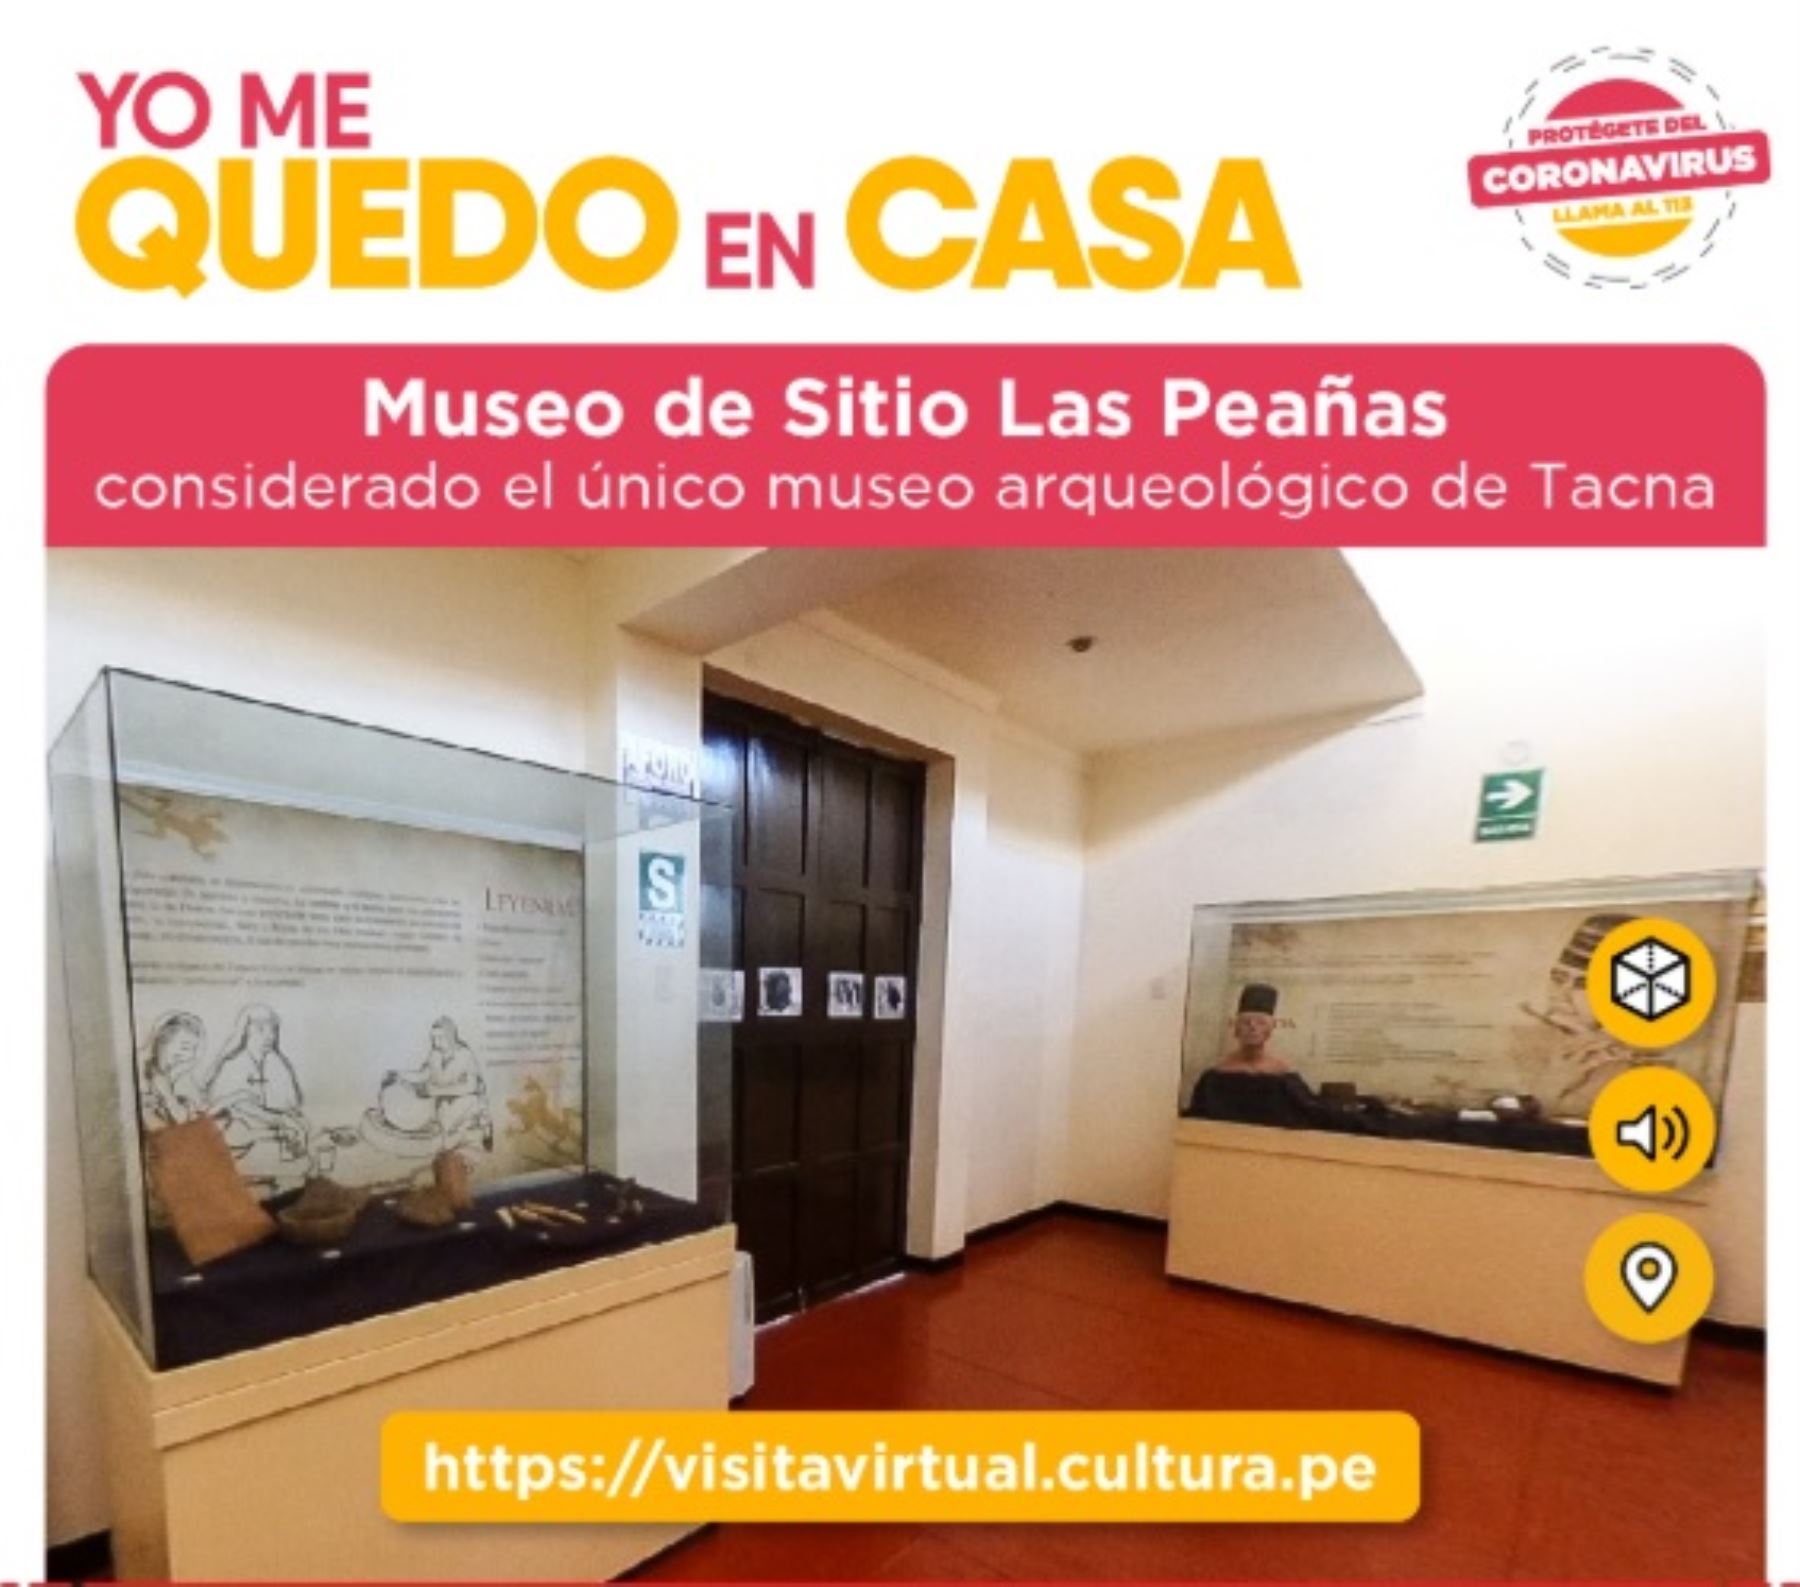 Conocer una de las más grandes colecciones de restos óseos de antiguos peruanos que poblaron hace diez siglos la región Tacna, la más austral del Perú, es posible durante este tiempo de aislamiento social debido al covid-19, con una visita virtual al Museo de Sitio Las Peañas.